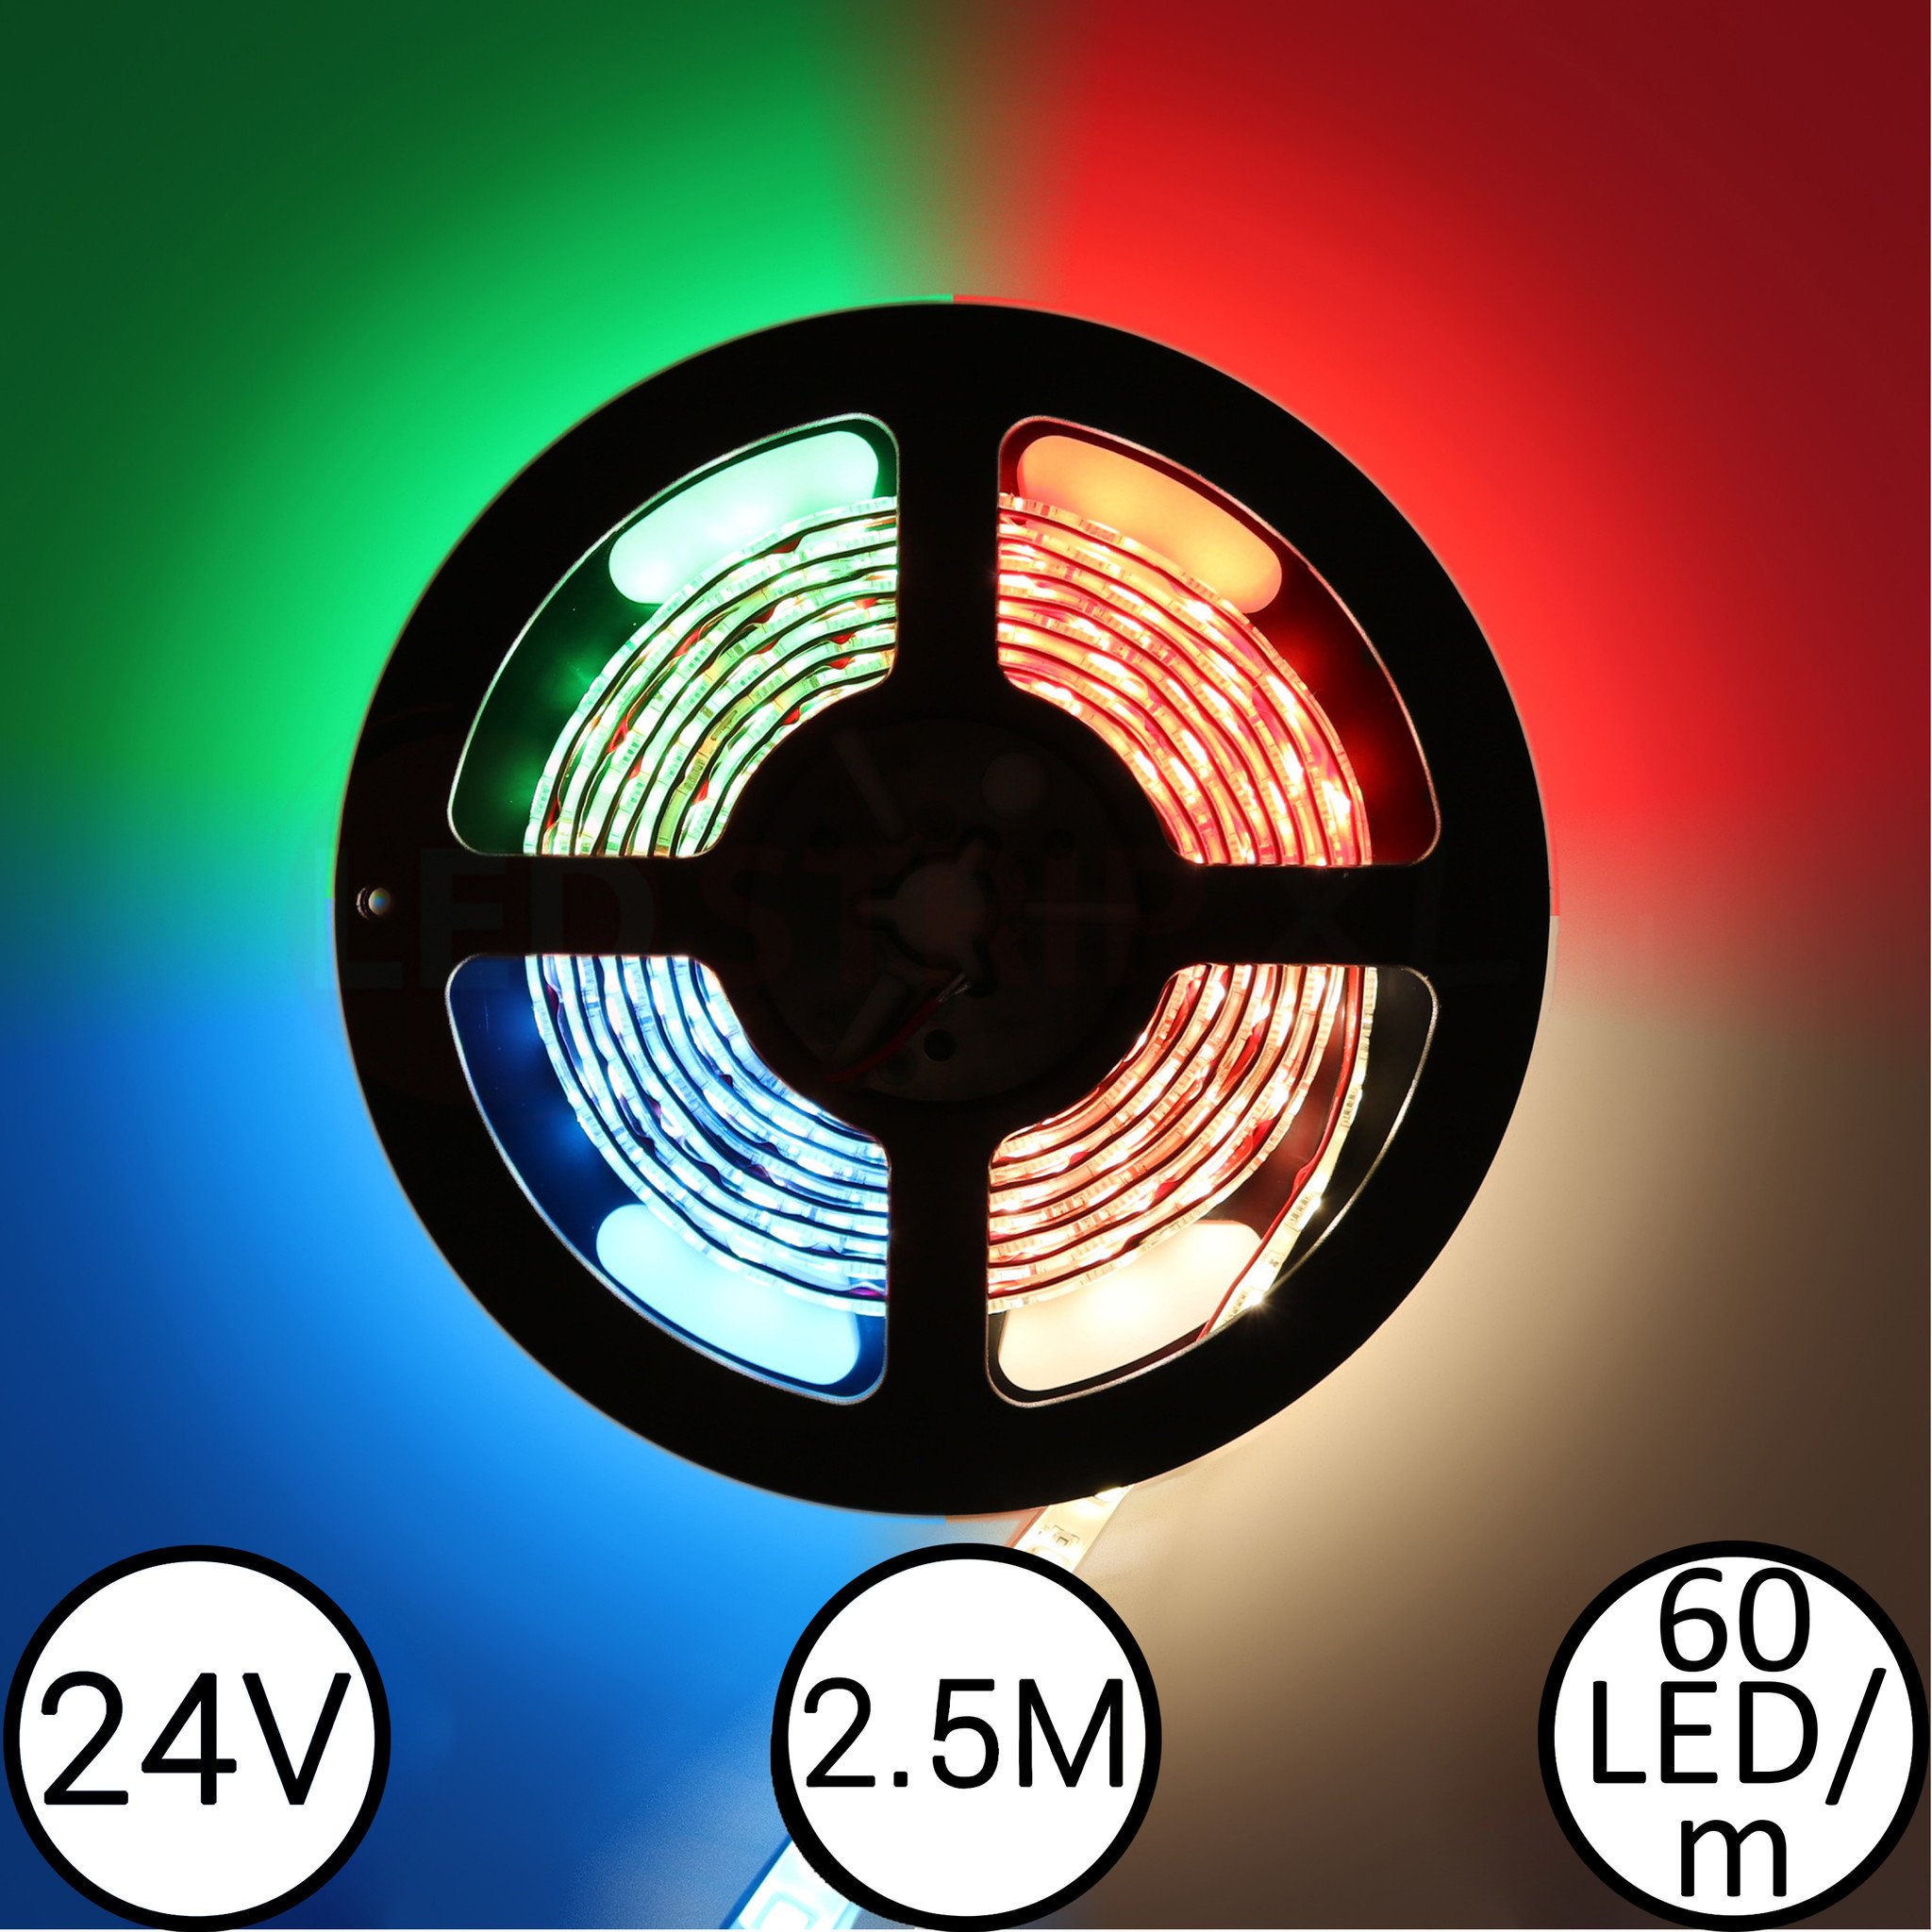 24 Volt LED Streifen weiß - IP65 - 2,5 Meter - All Day Led